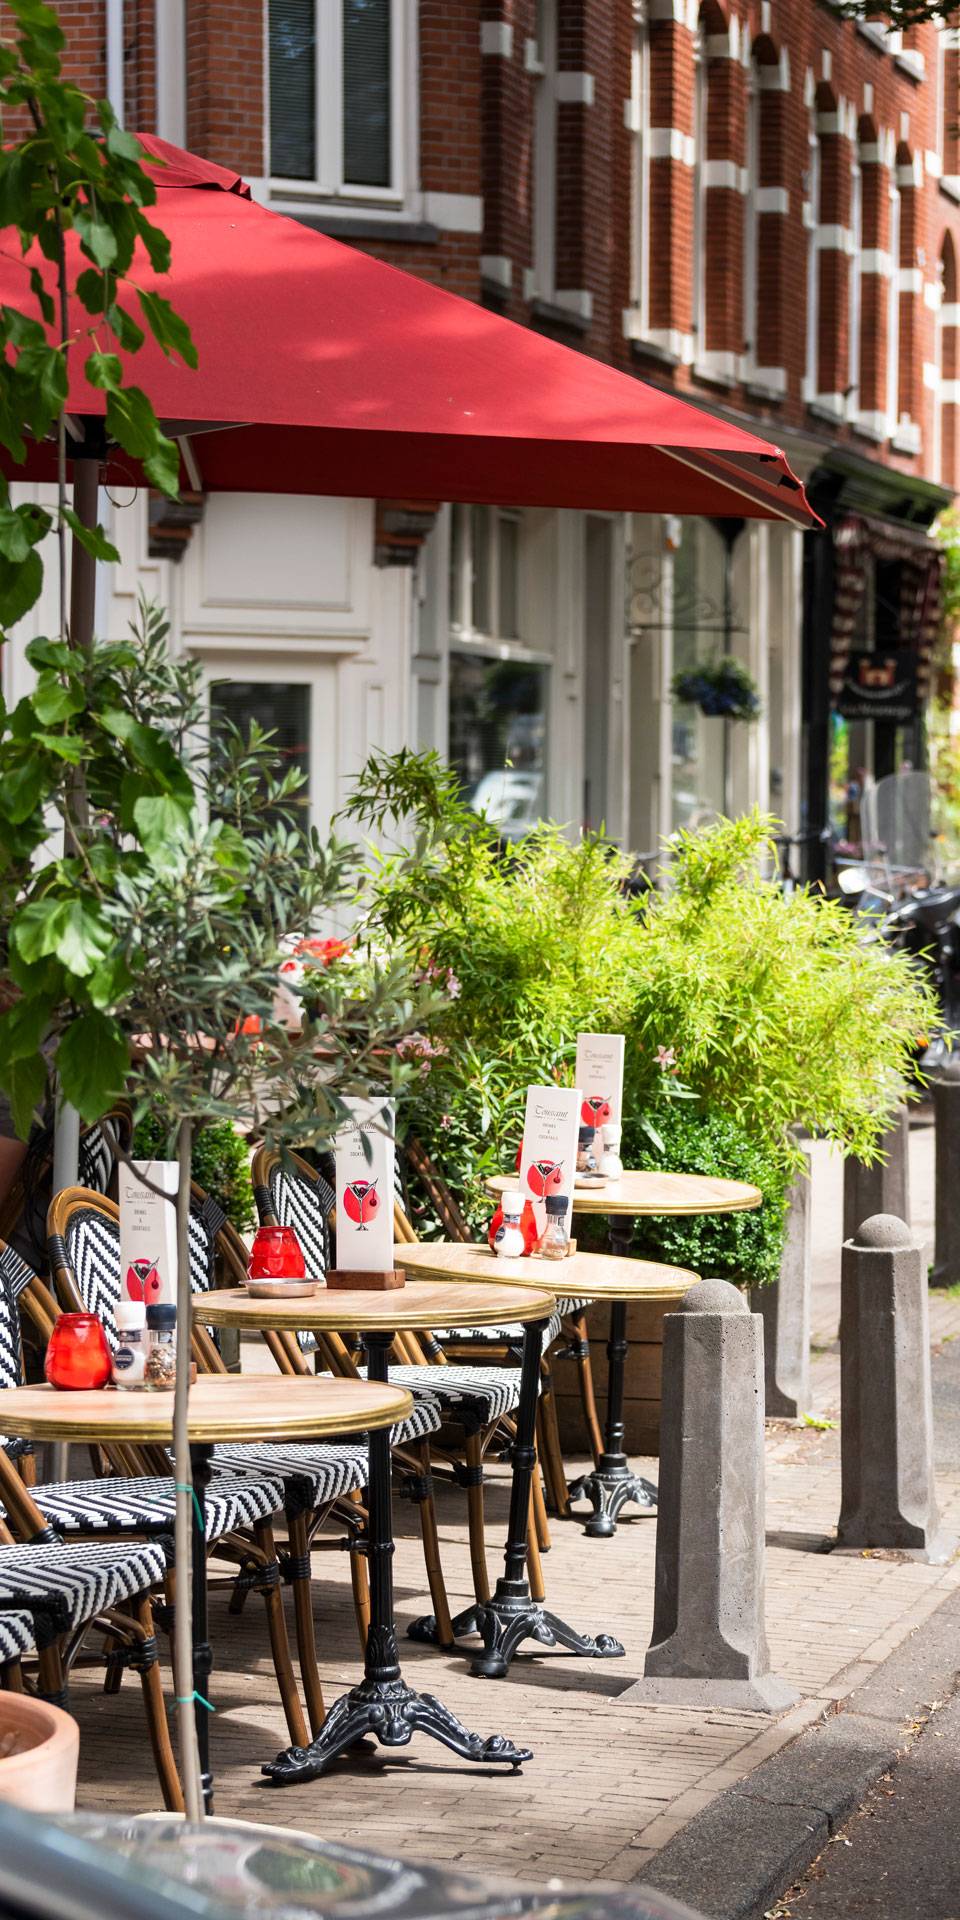 Cafe Toussaint Amsterdam BosboomToussaintstraat terras